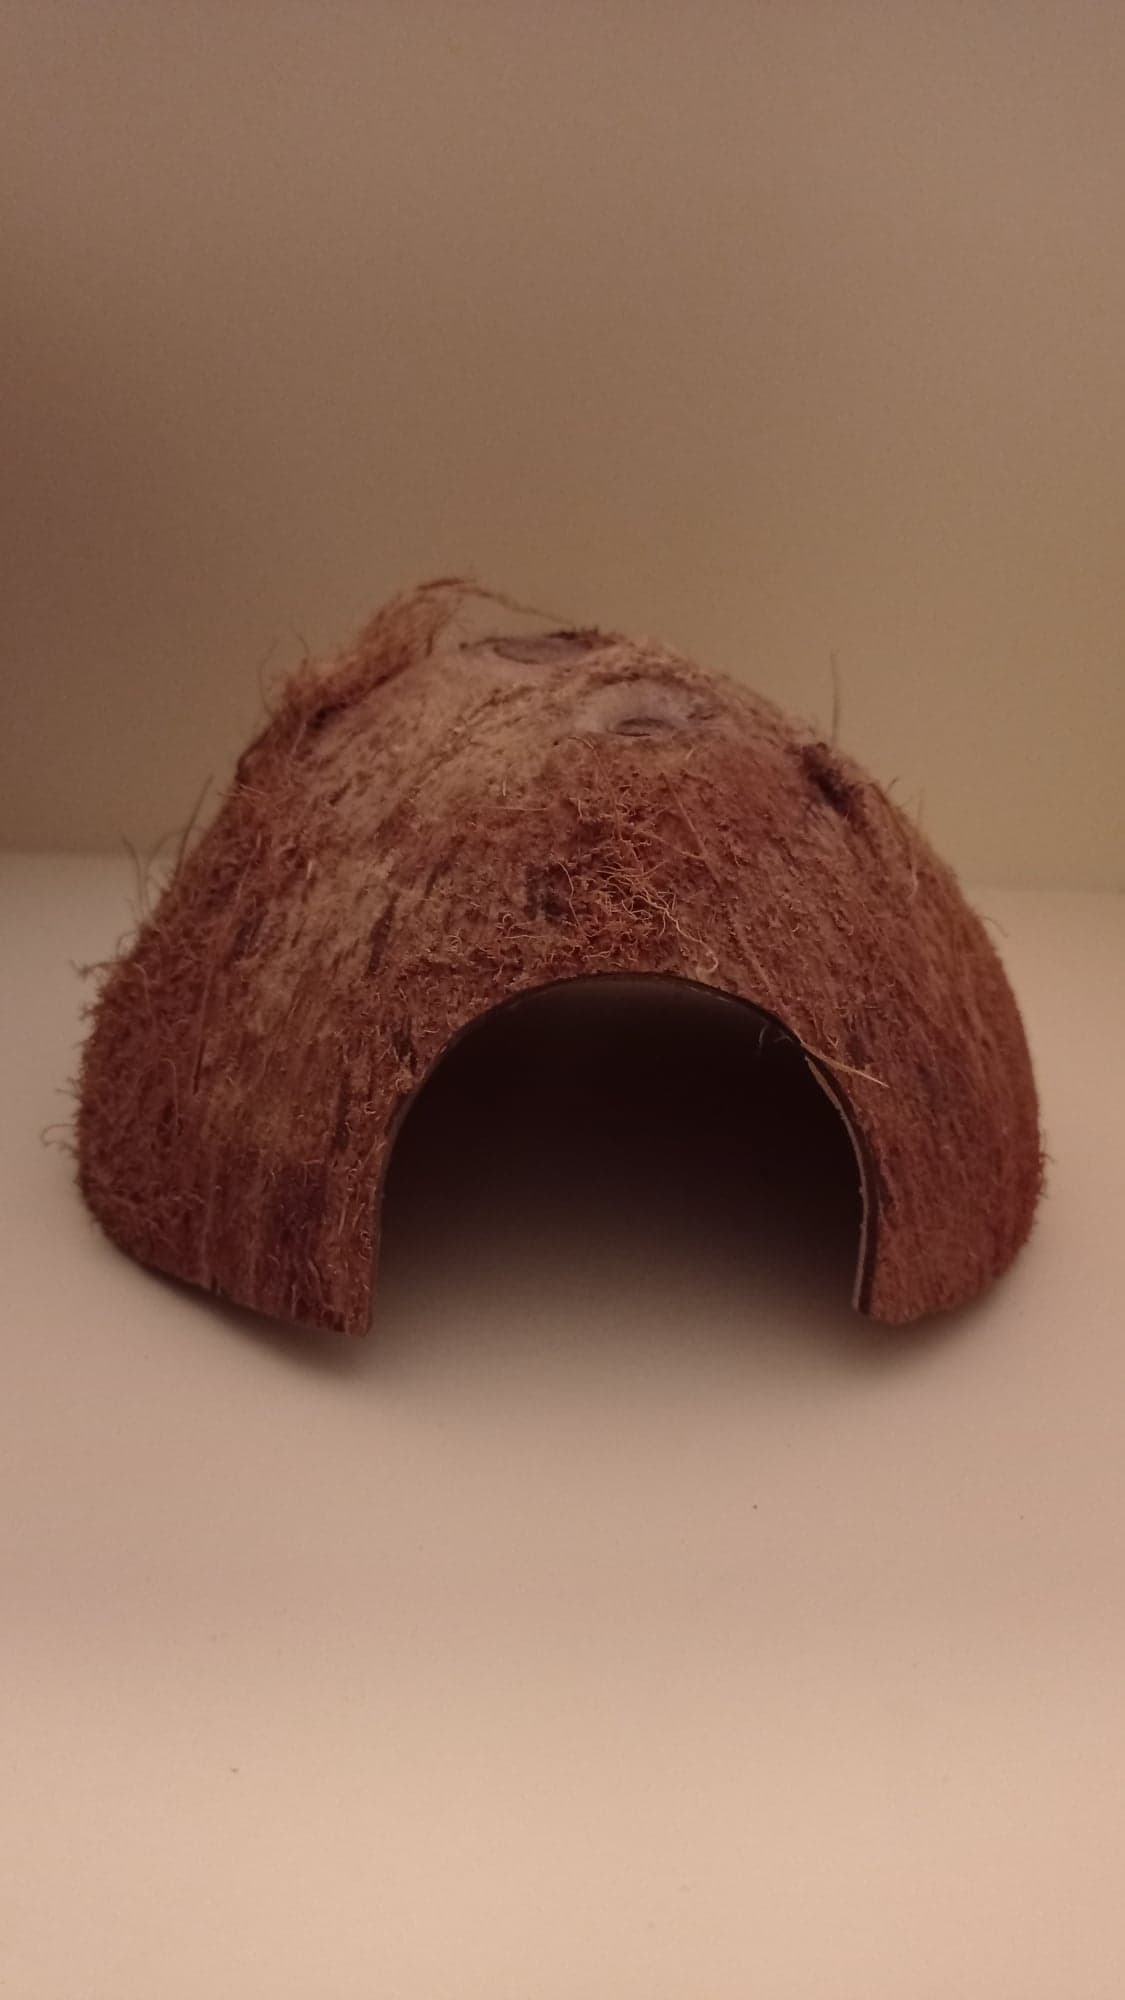 Kokosová skořápka půlená s otvorem